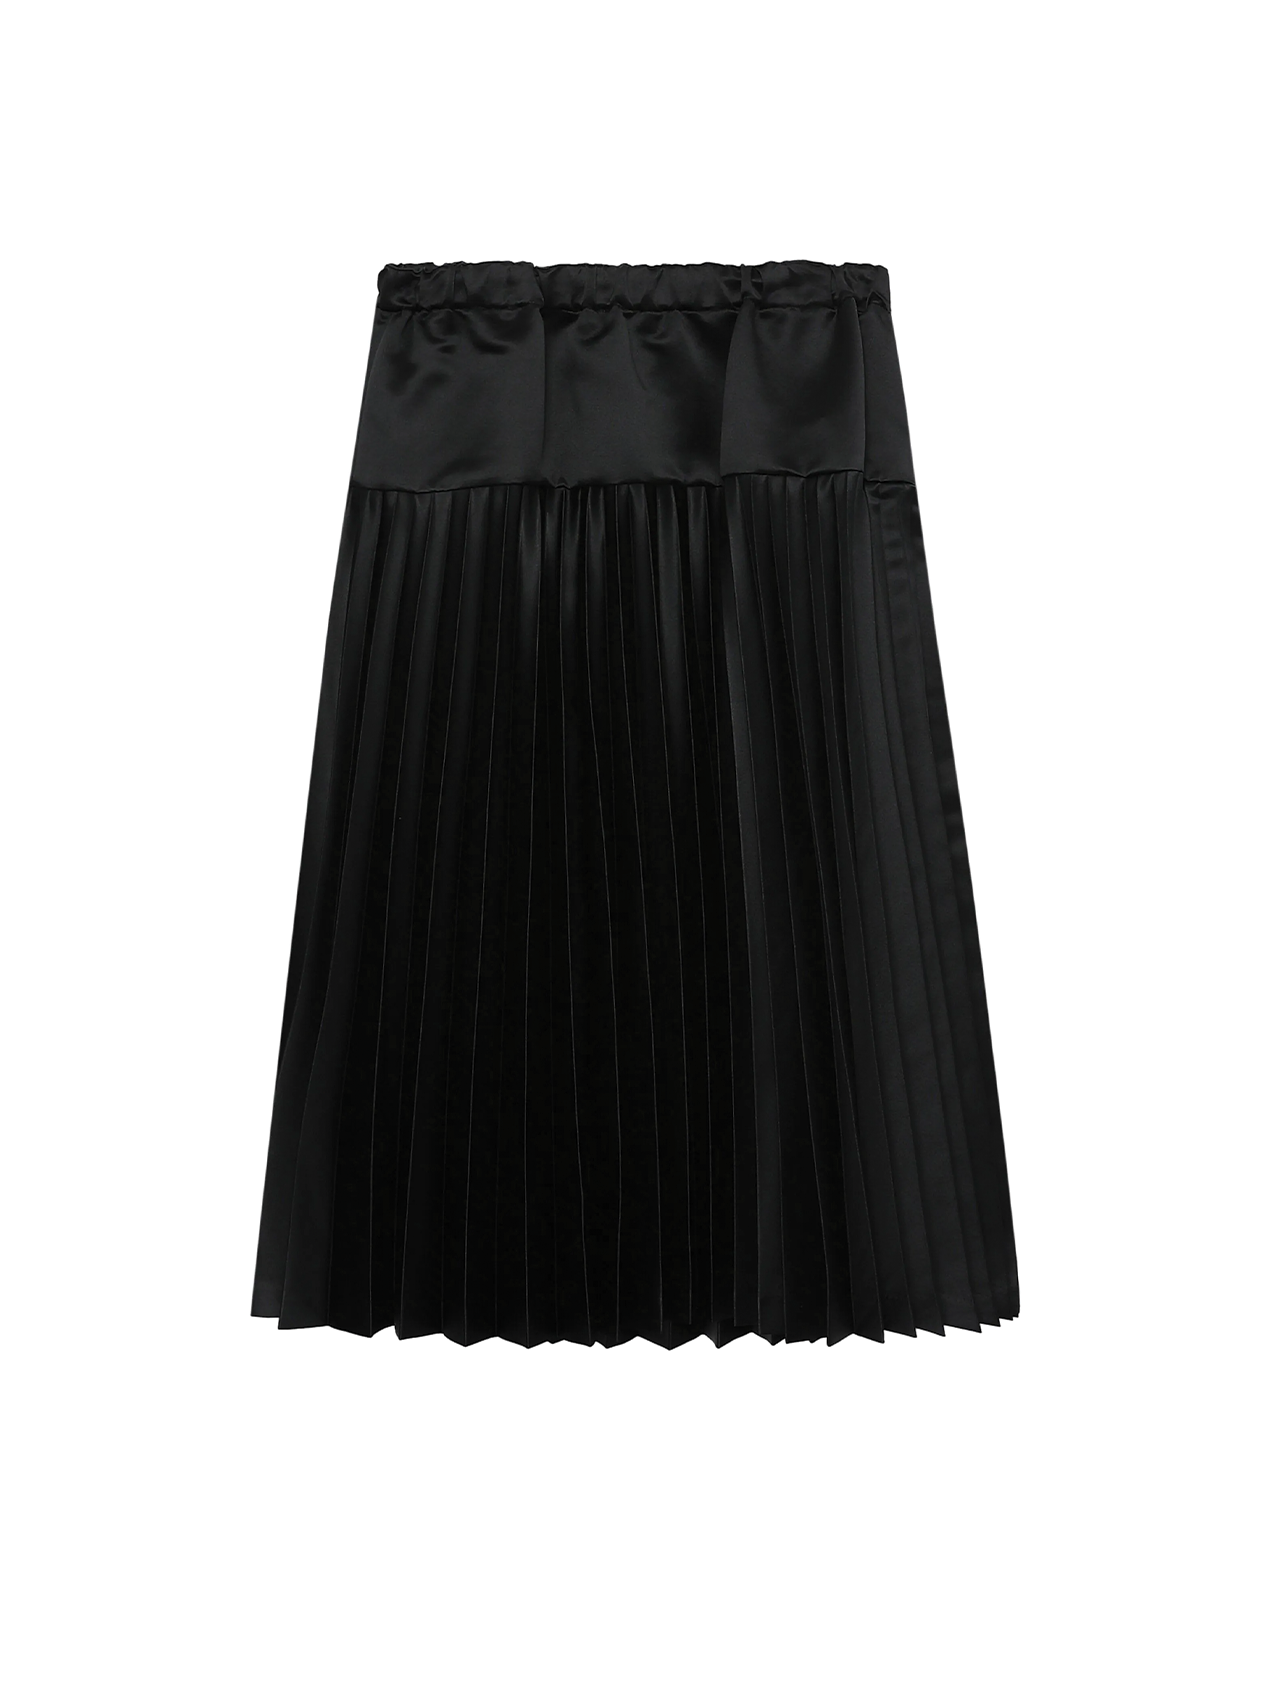 CDG CDG Black Satin Pleated Skirt